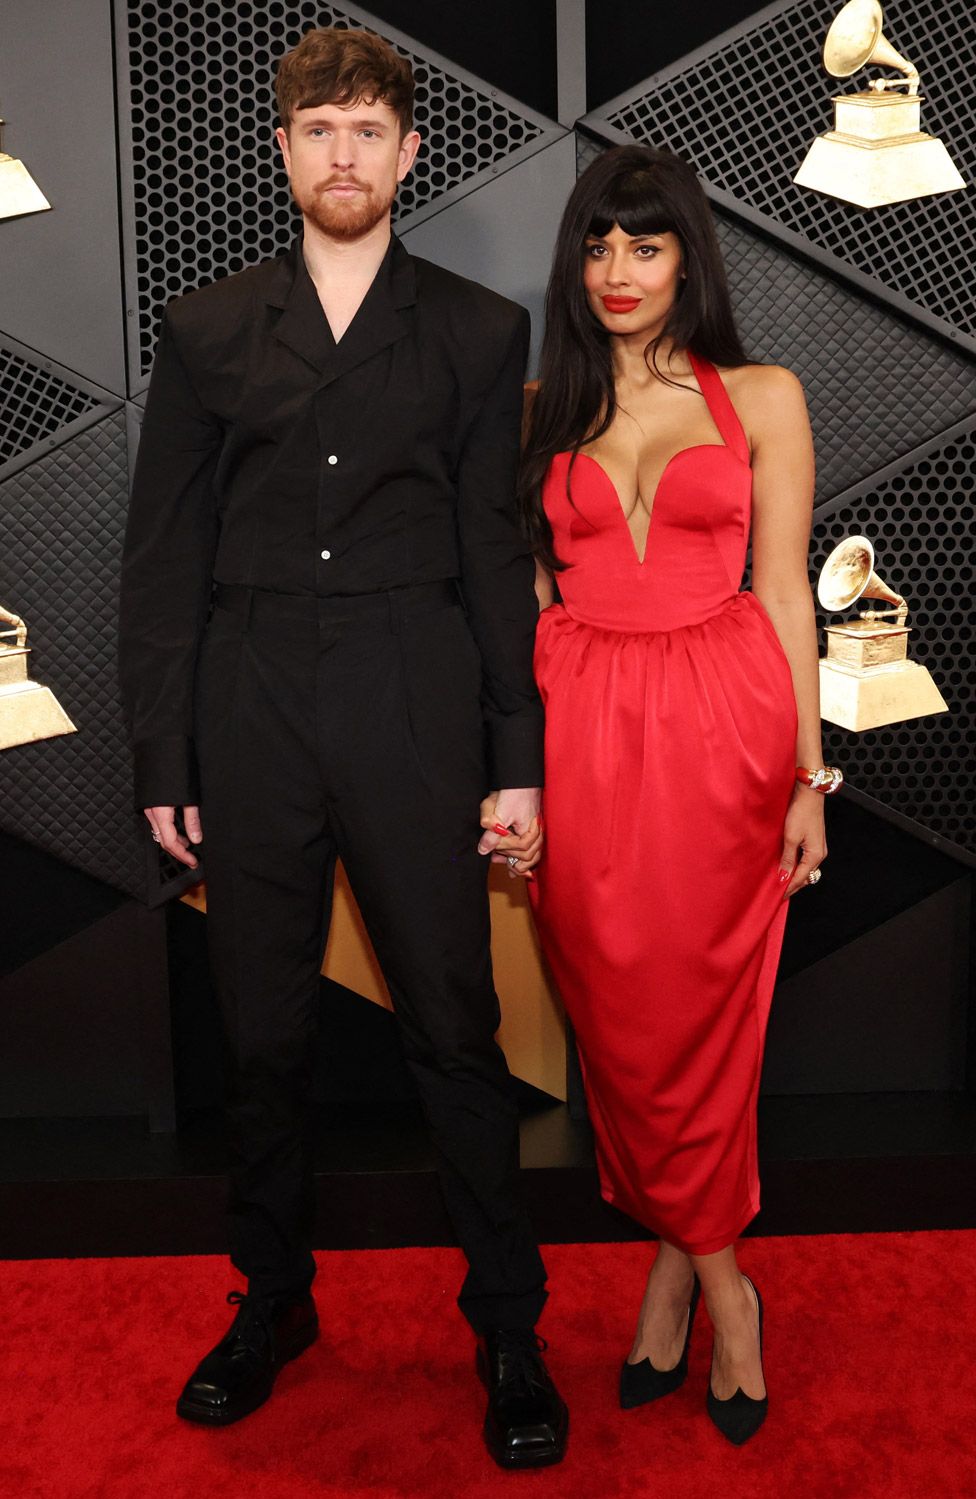 James Blake and Jameela Jamil at the Grammys